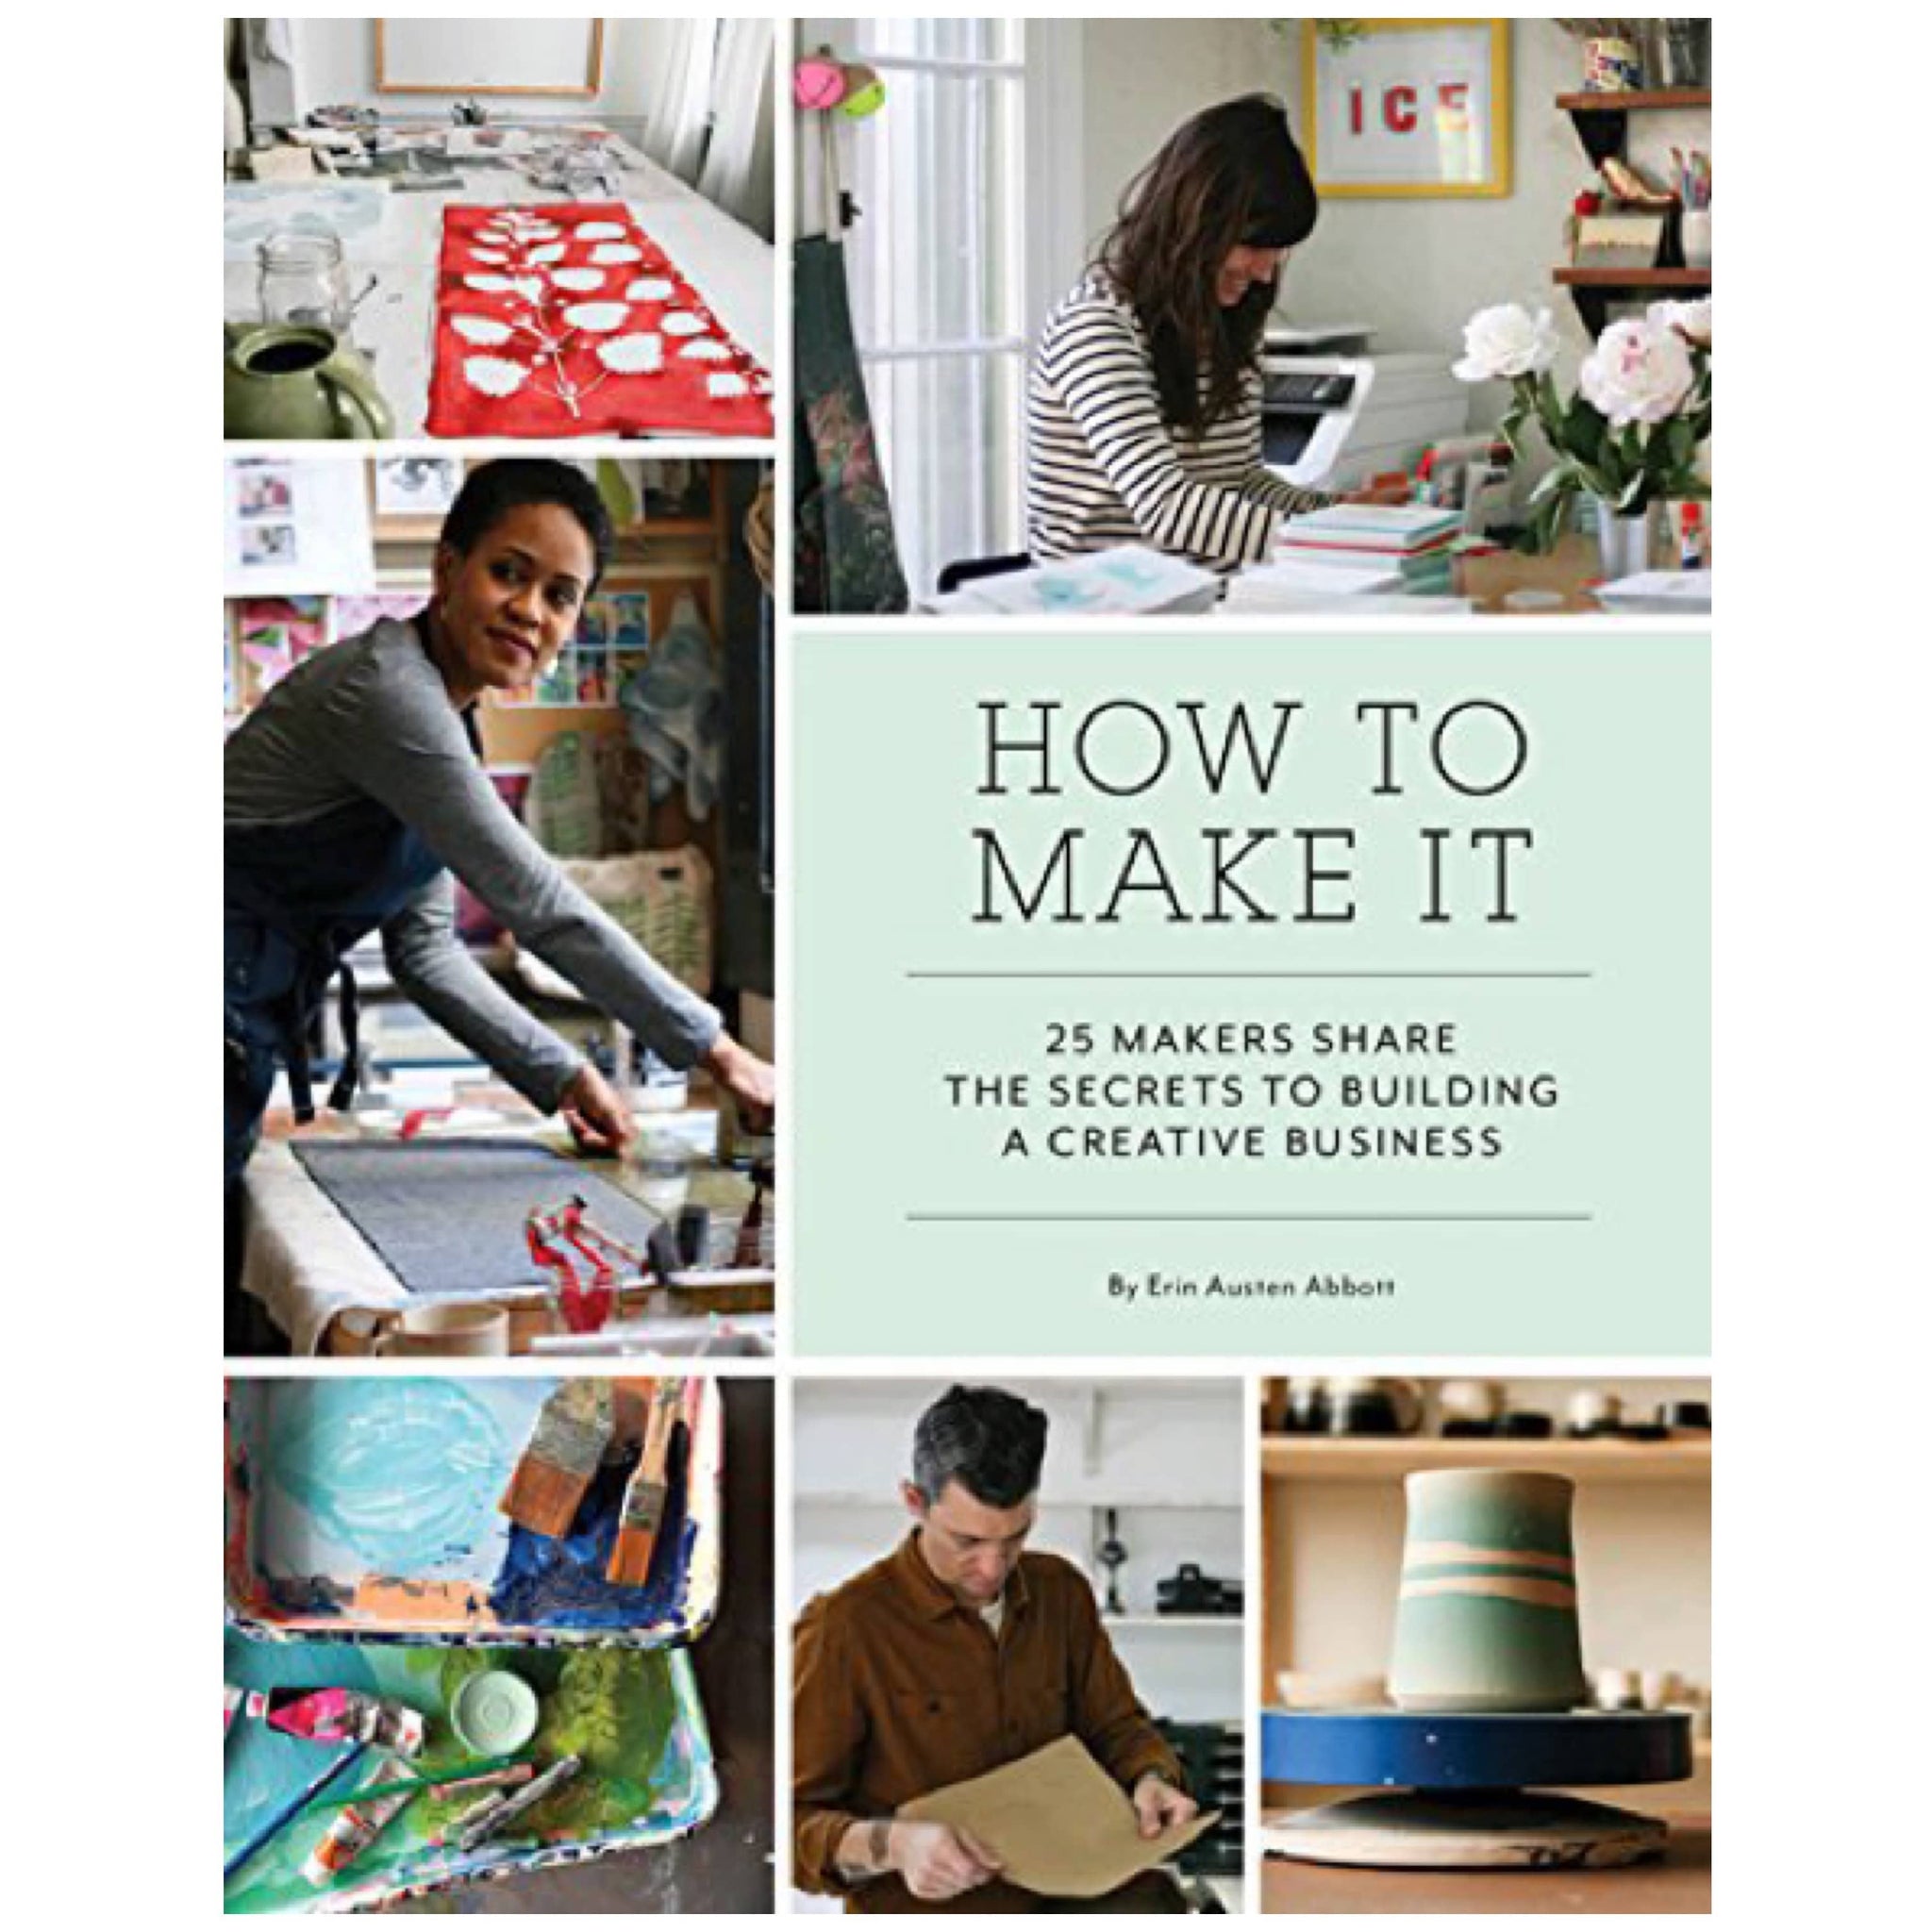 How to Make it by Erin Austen Abbott